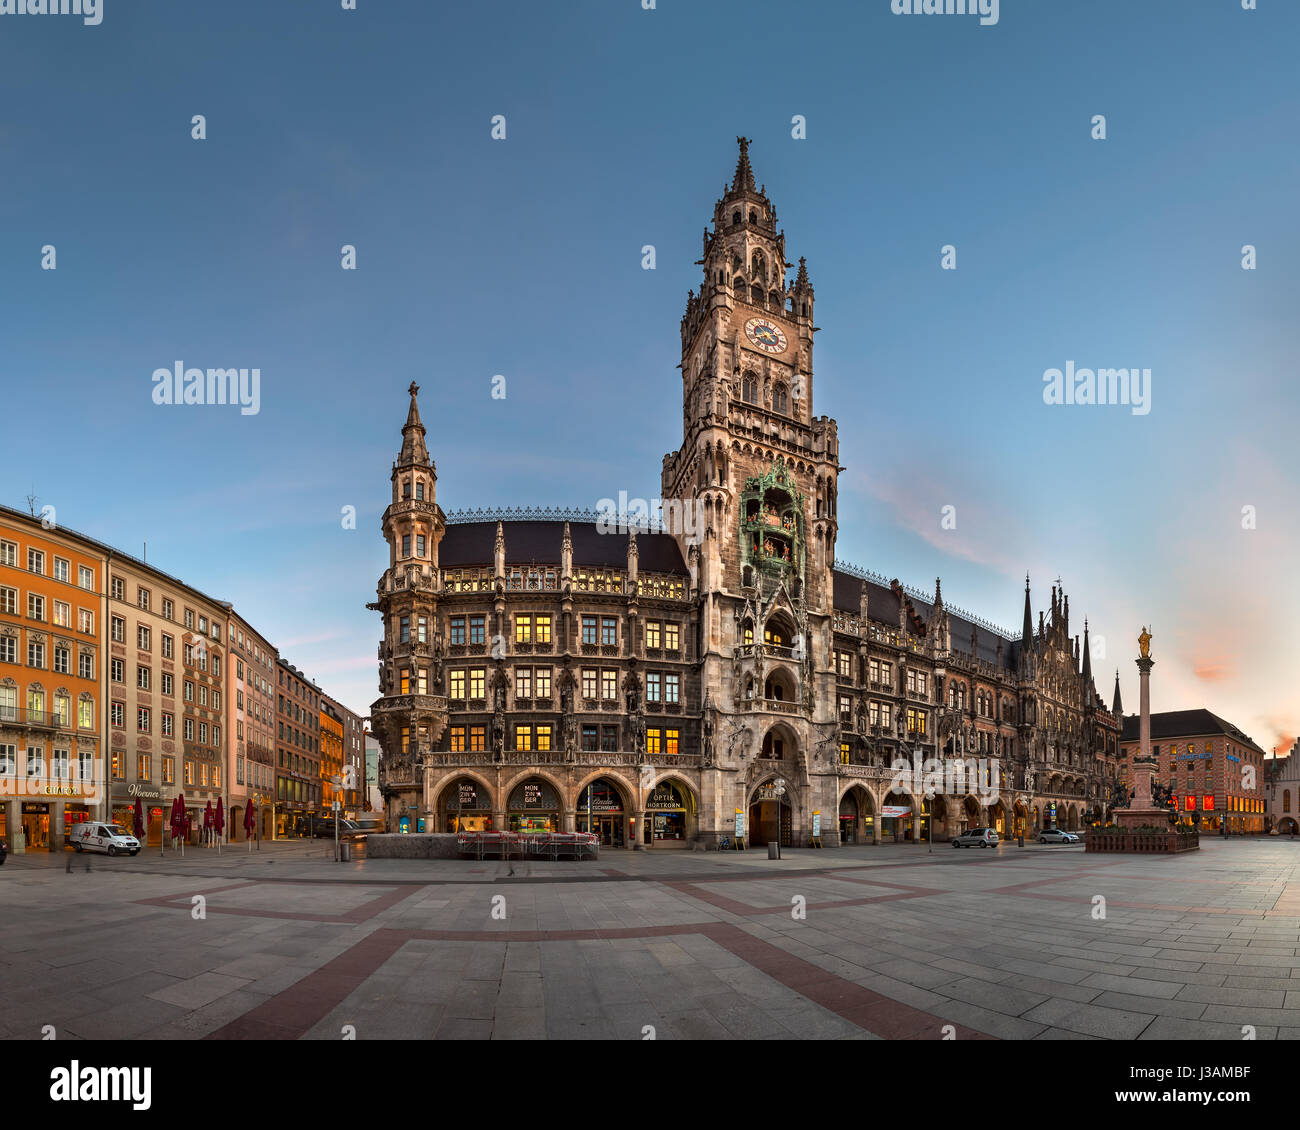 MUNICH, ALLEMAGNE - le 14 janvier 2016 : Panorama de Marienplatz à Munich, Allemagne. La Marienplatz est une place centrale de Munich et a été la ville principale Banque D'Images